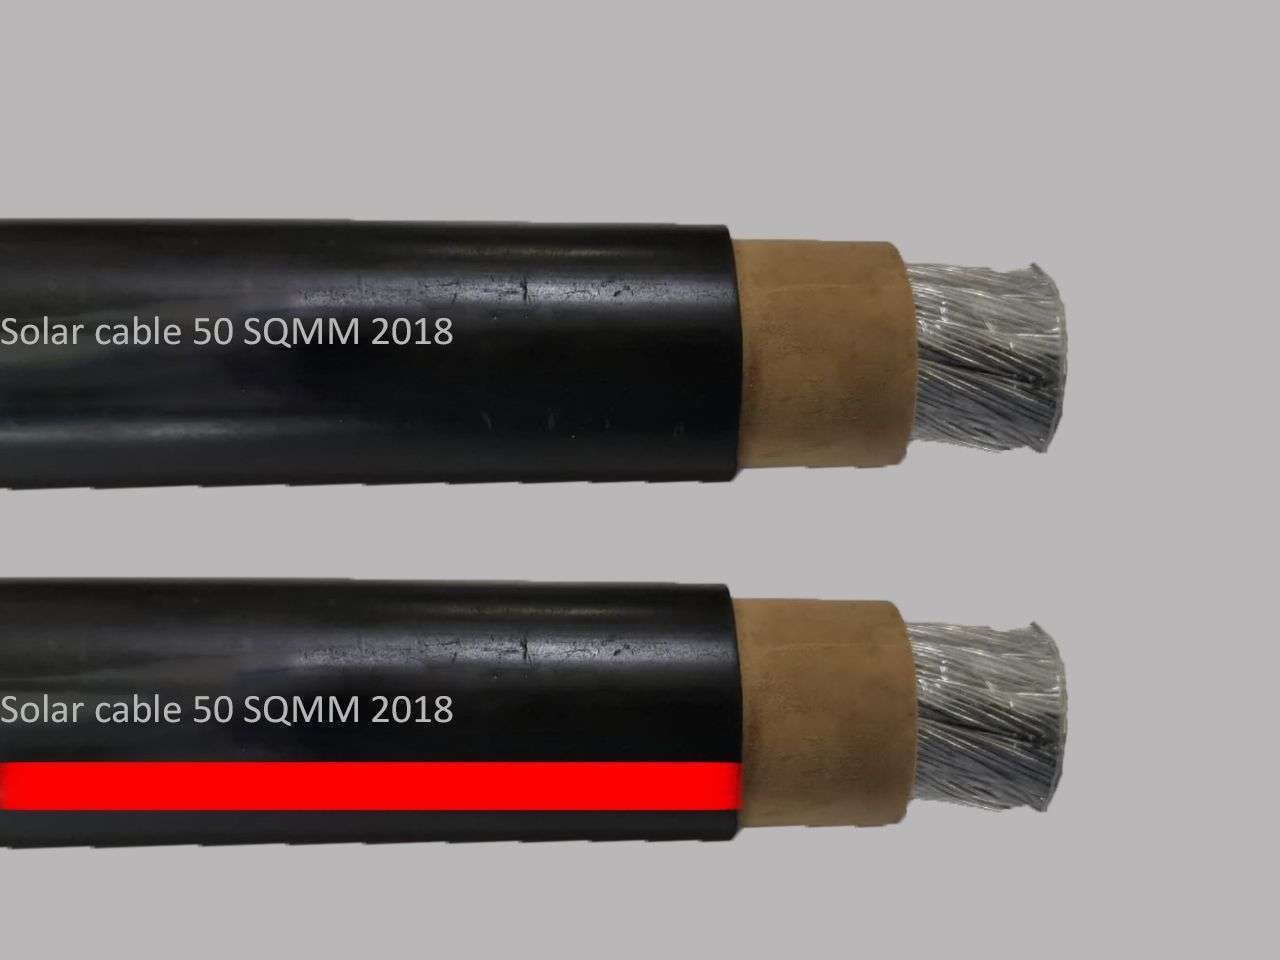 apar-solar-cable-50-sq.m-500m-drum-atc-xlp-red_en.jpg